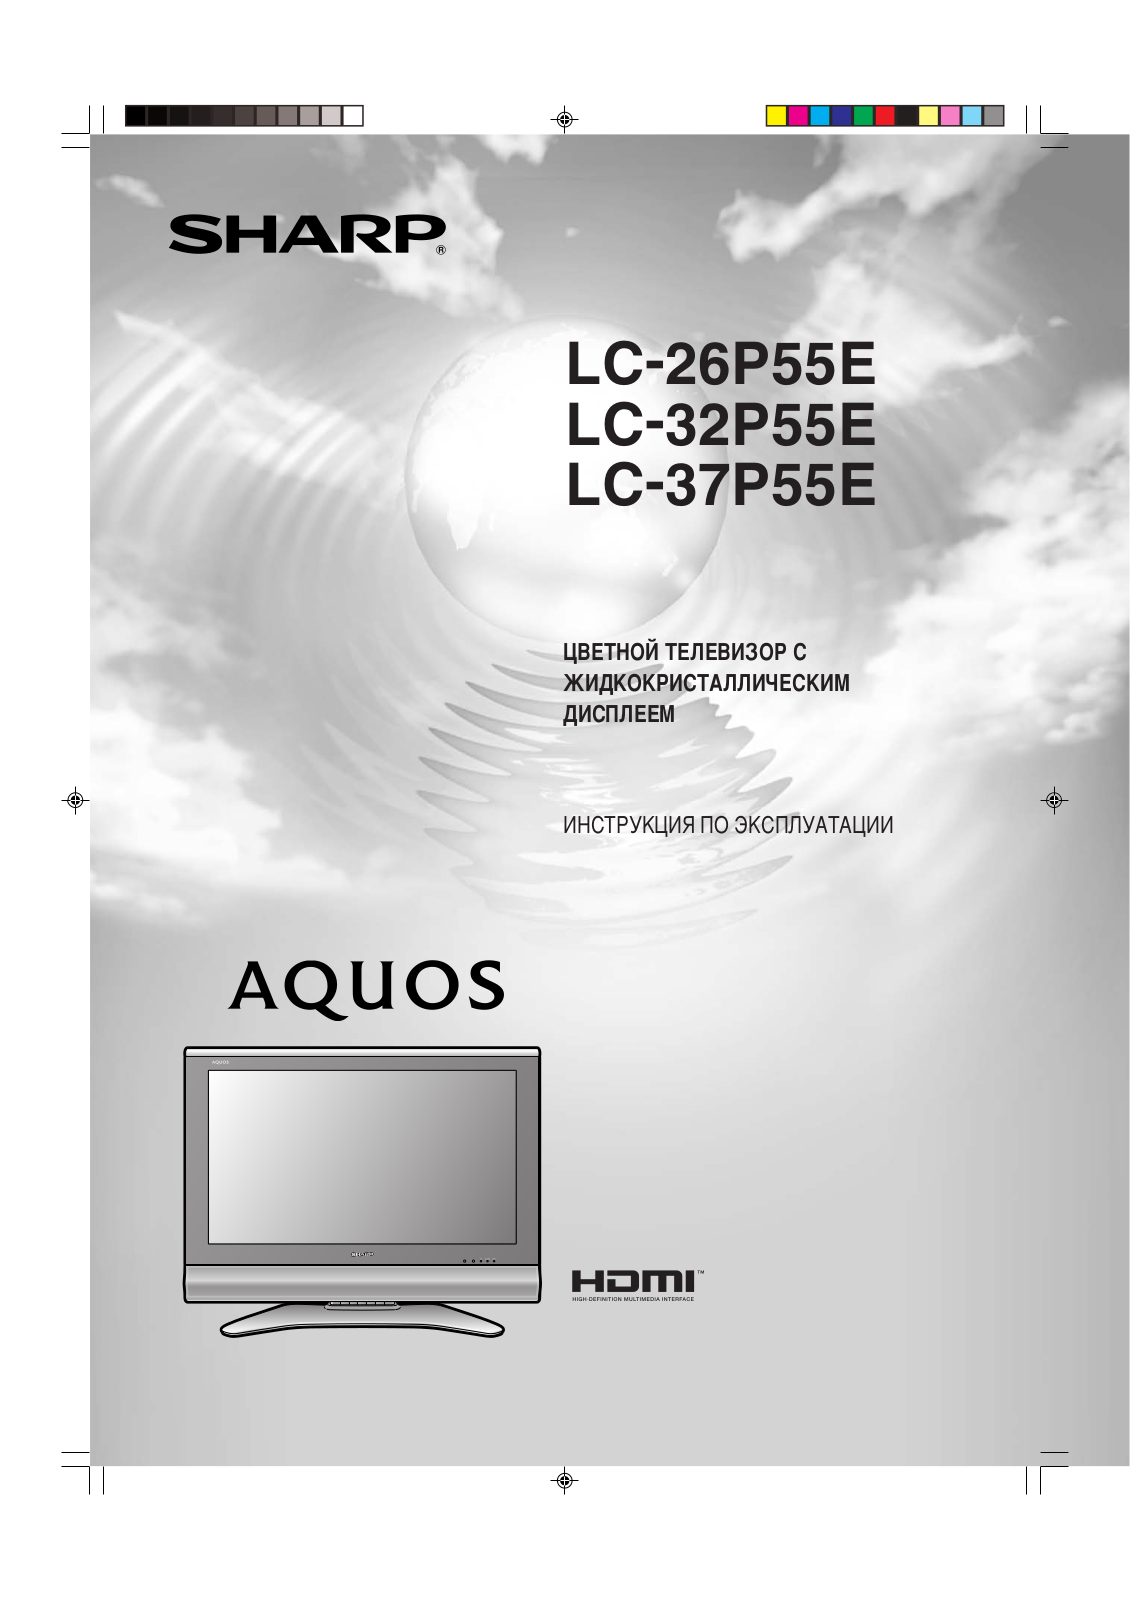 SHARP LC-32P55E, LC-37P55E, LC-26P55E User Manual